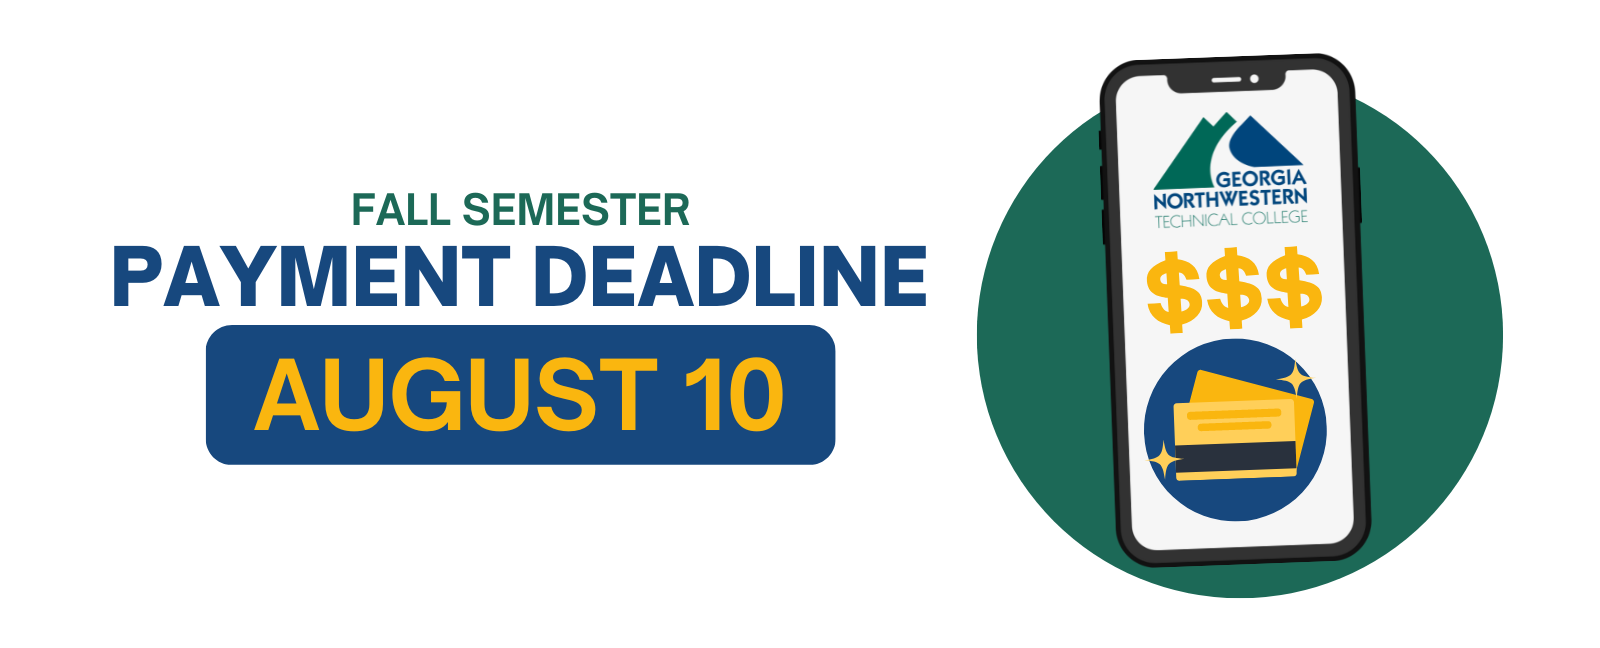 Fall Semester Payment Deadline August 10